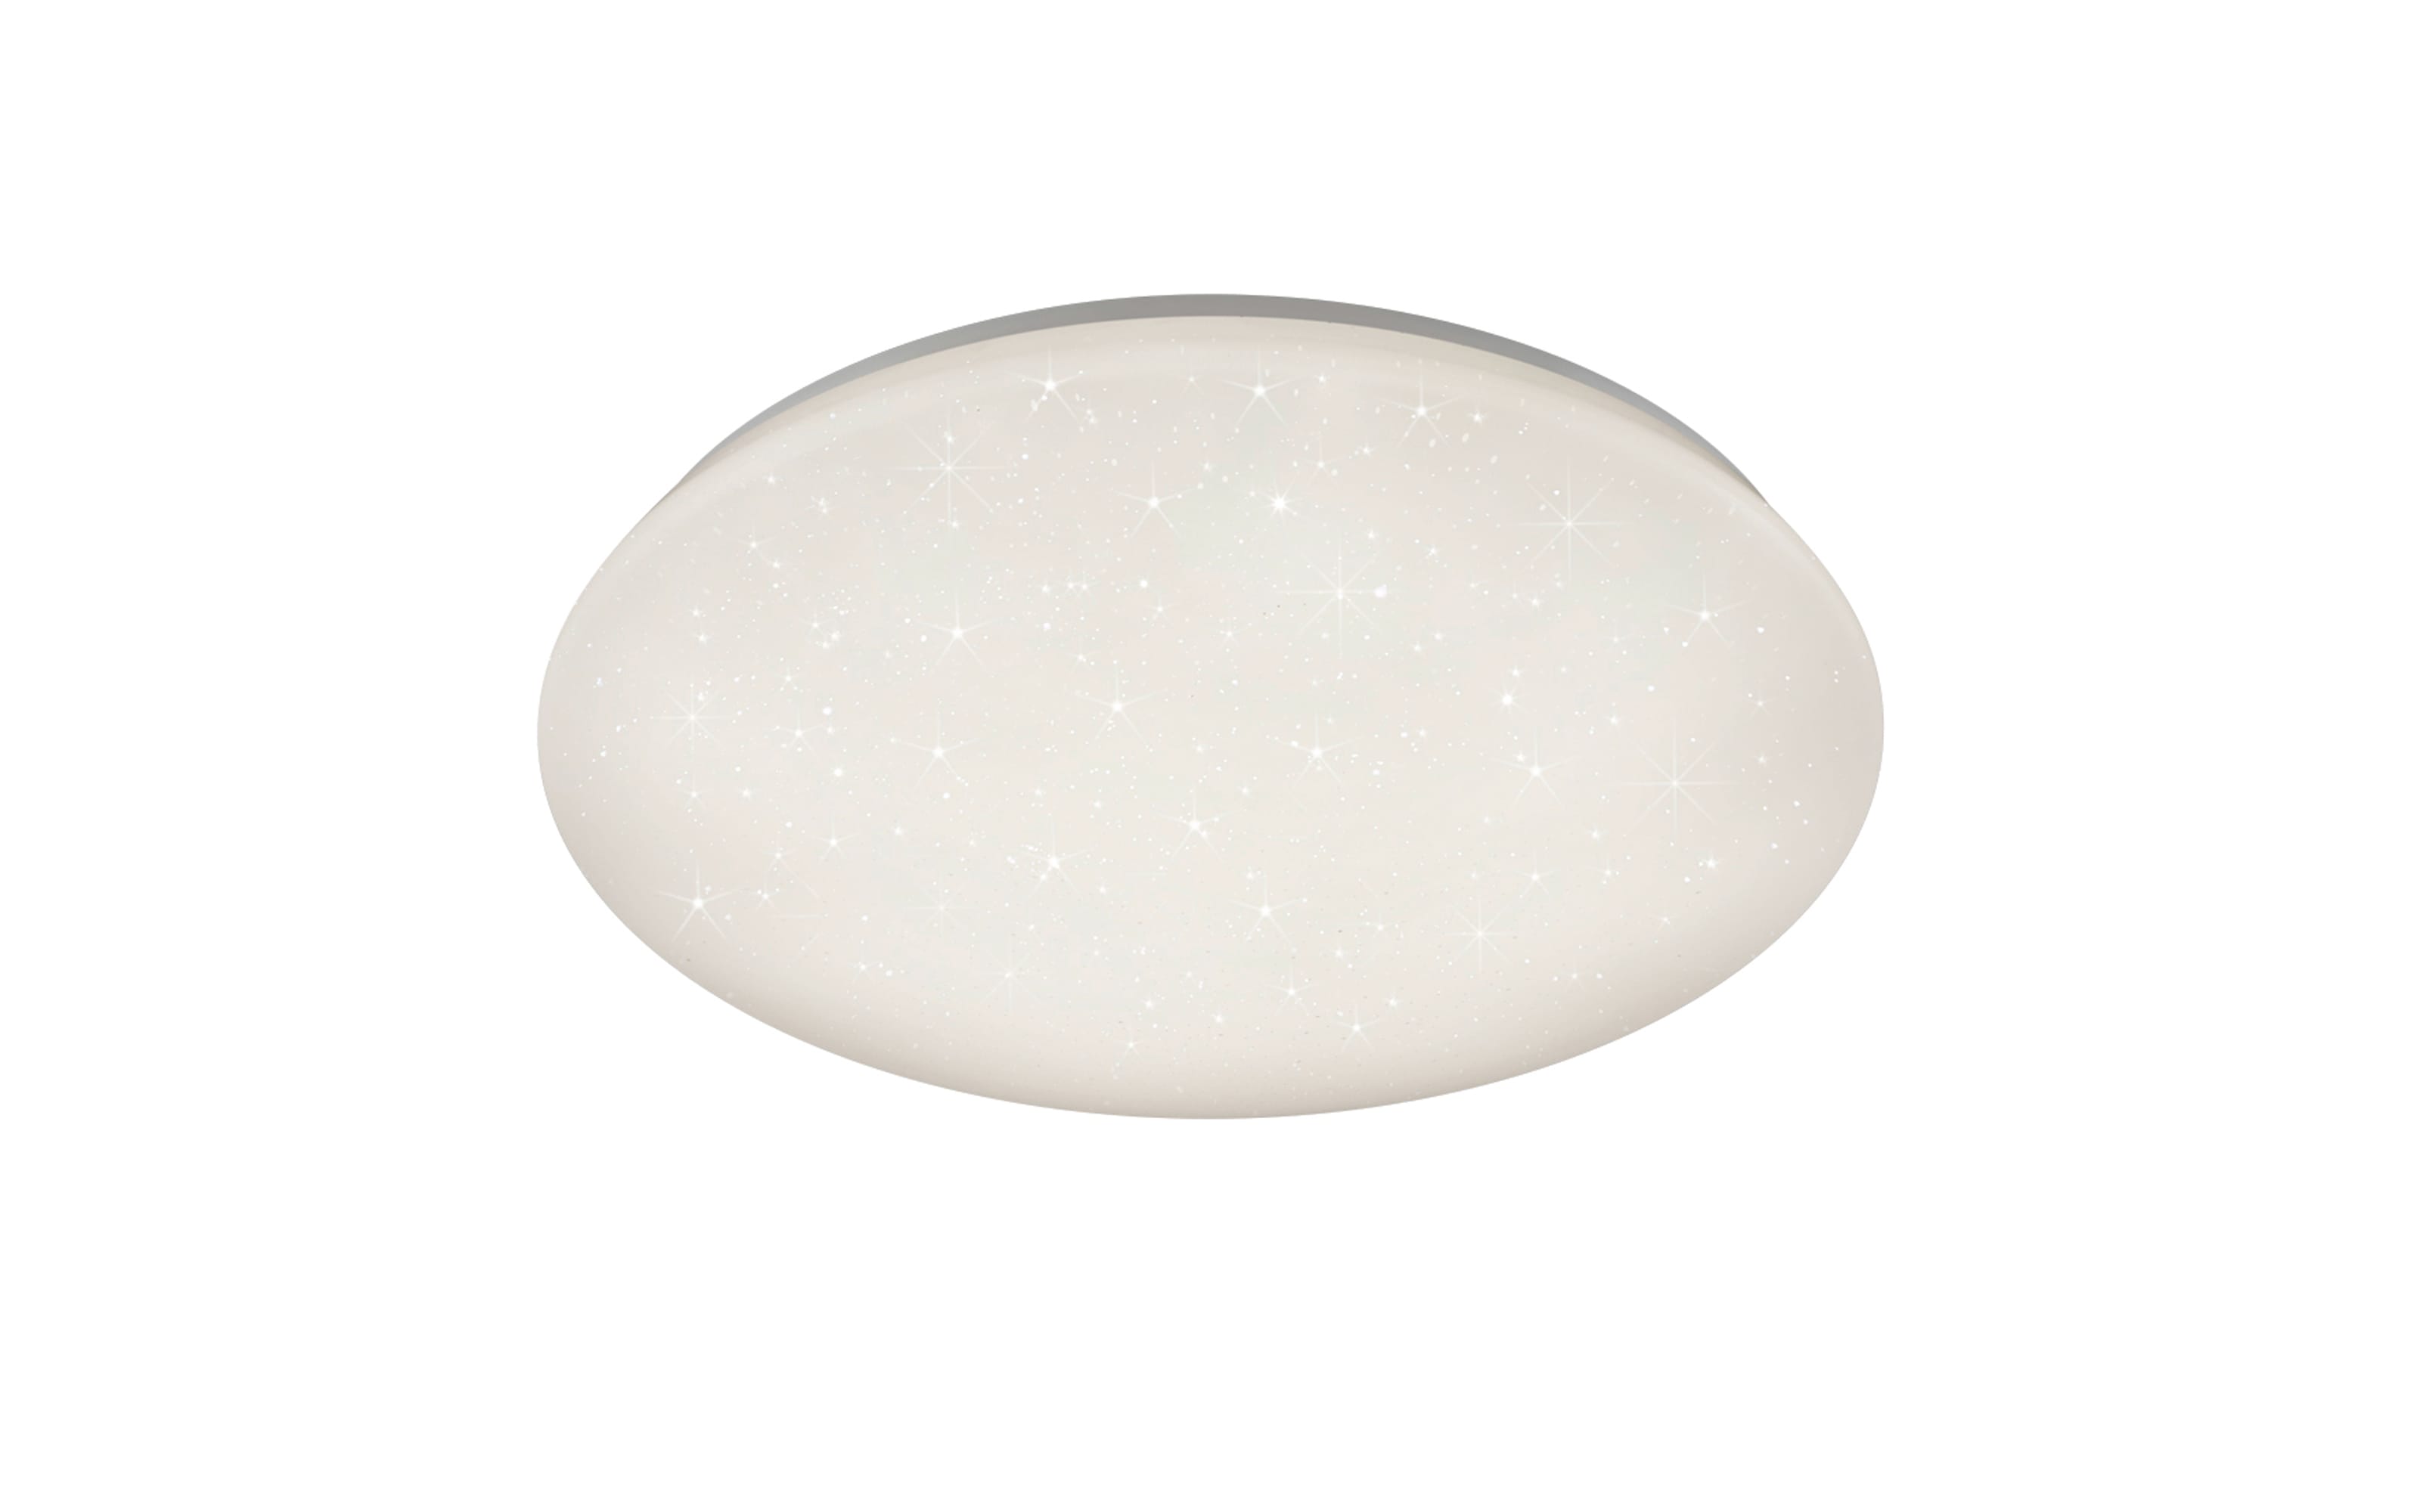 LED-Deckenleuchte Potz Starlight, weiß, 50 cm